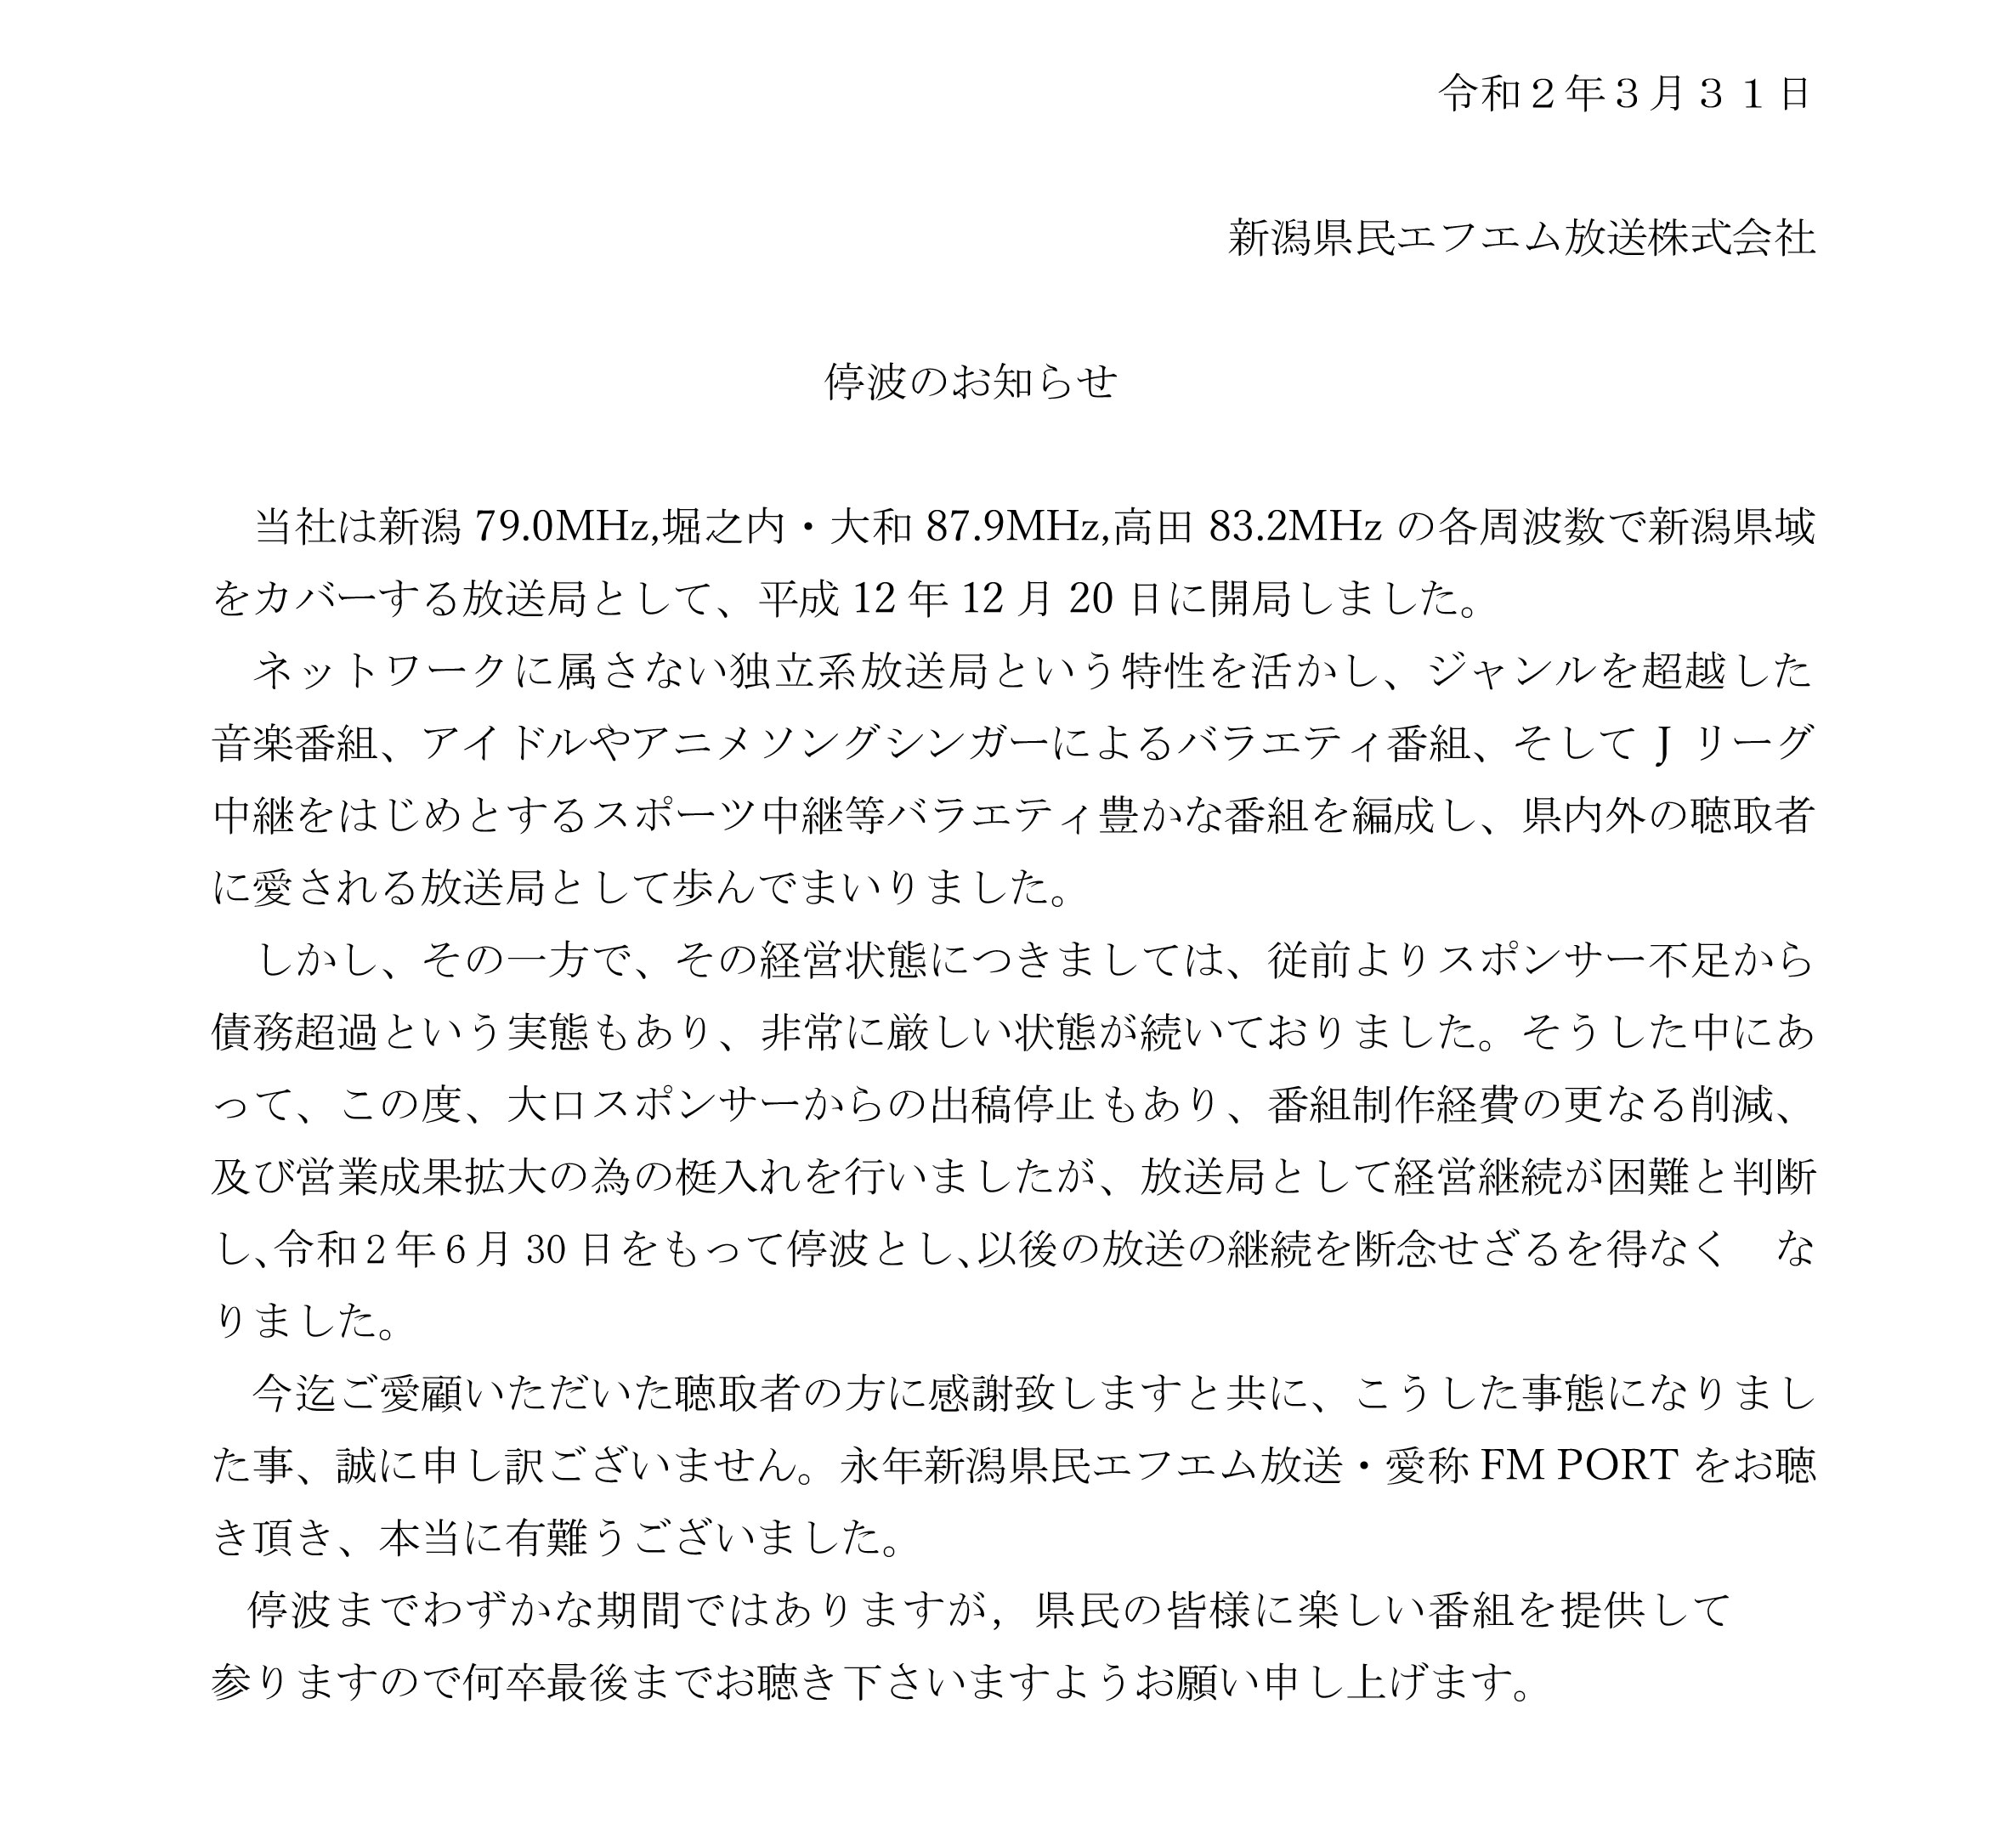 新潟県民エフエム放送 Fm Port が6月30日をもって停波 閉局へ Akb48gメモ